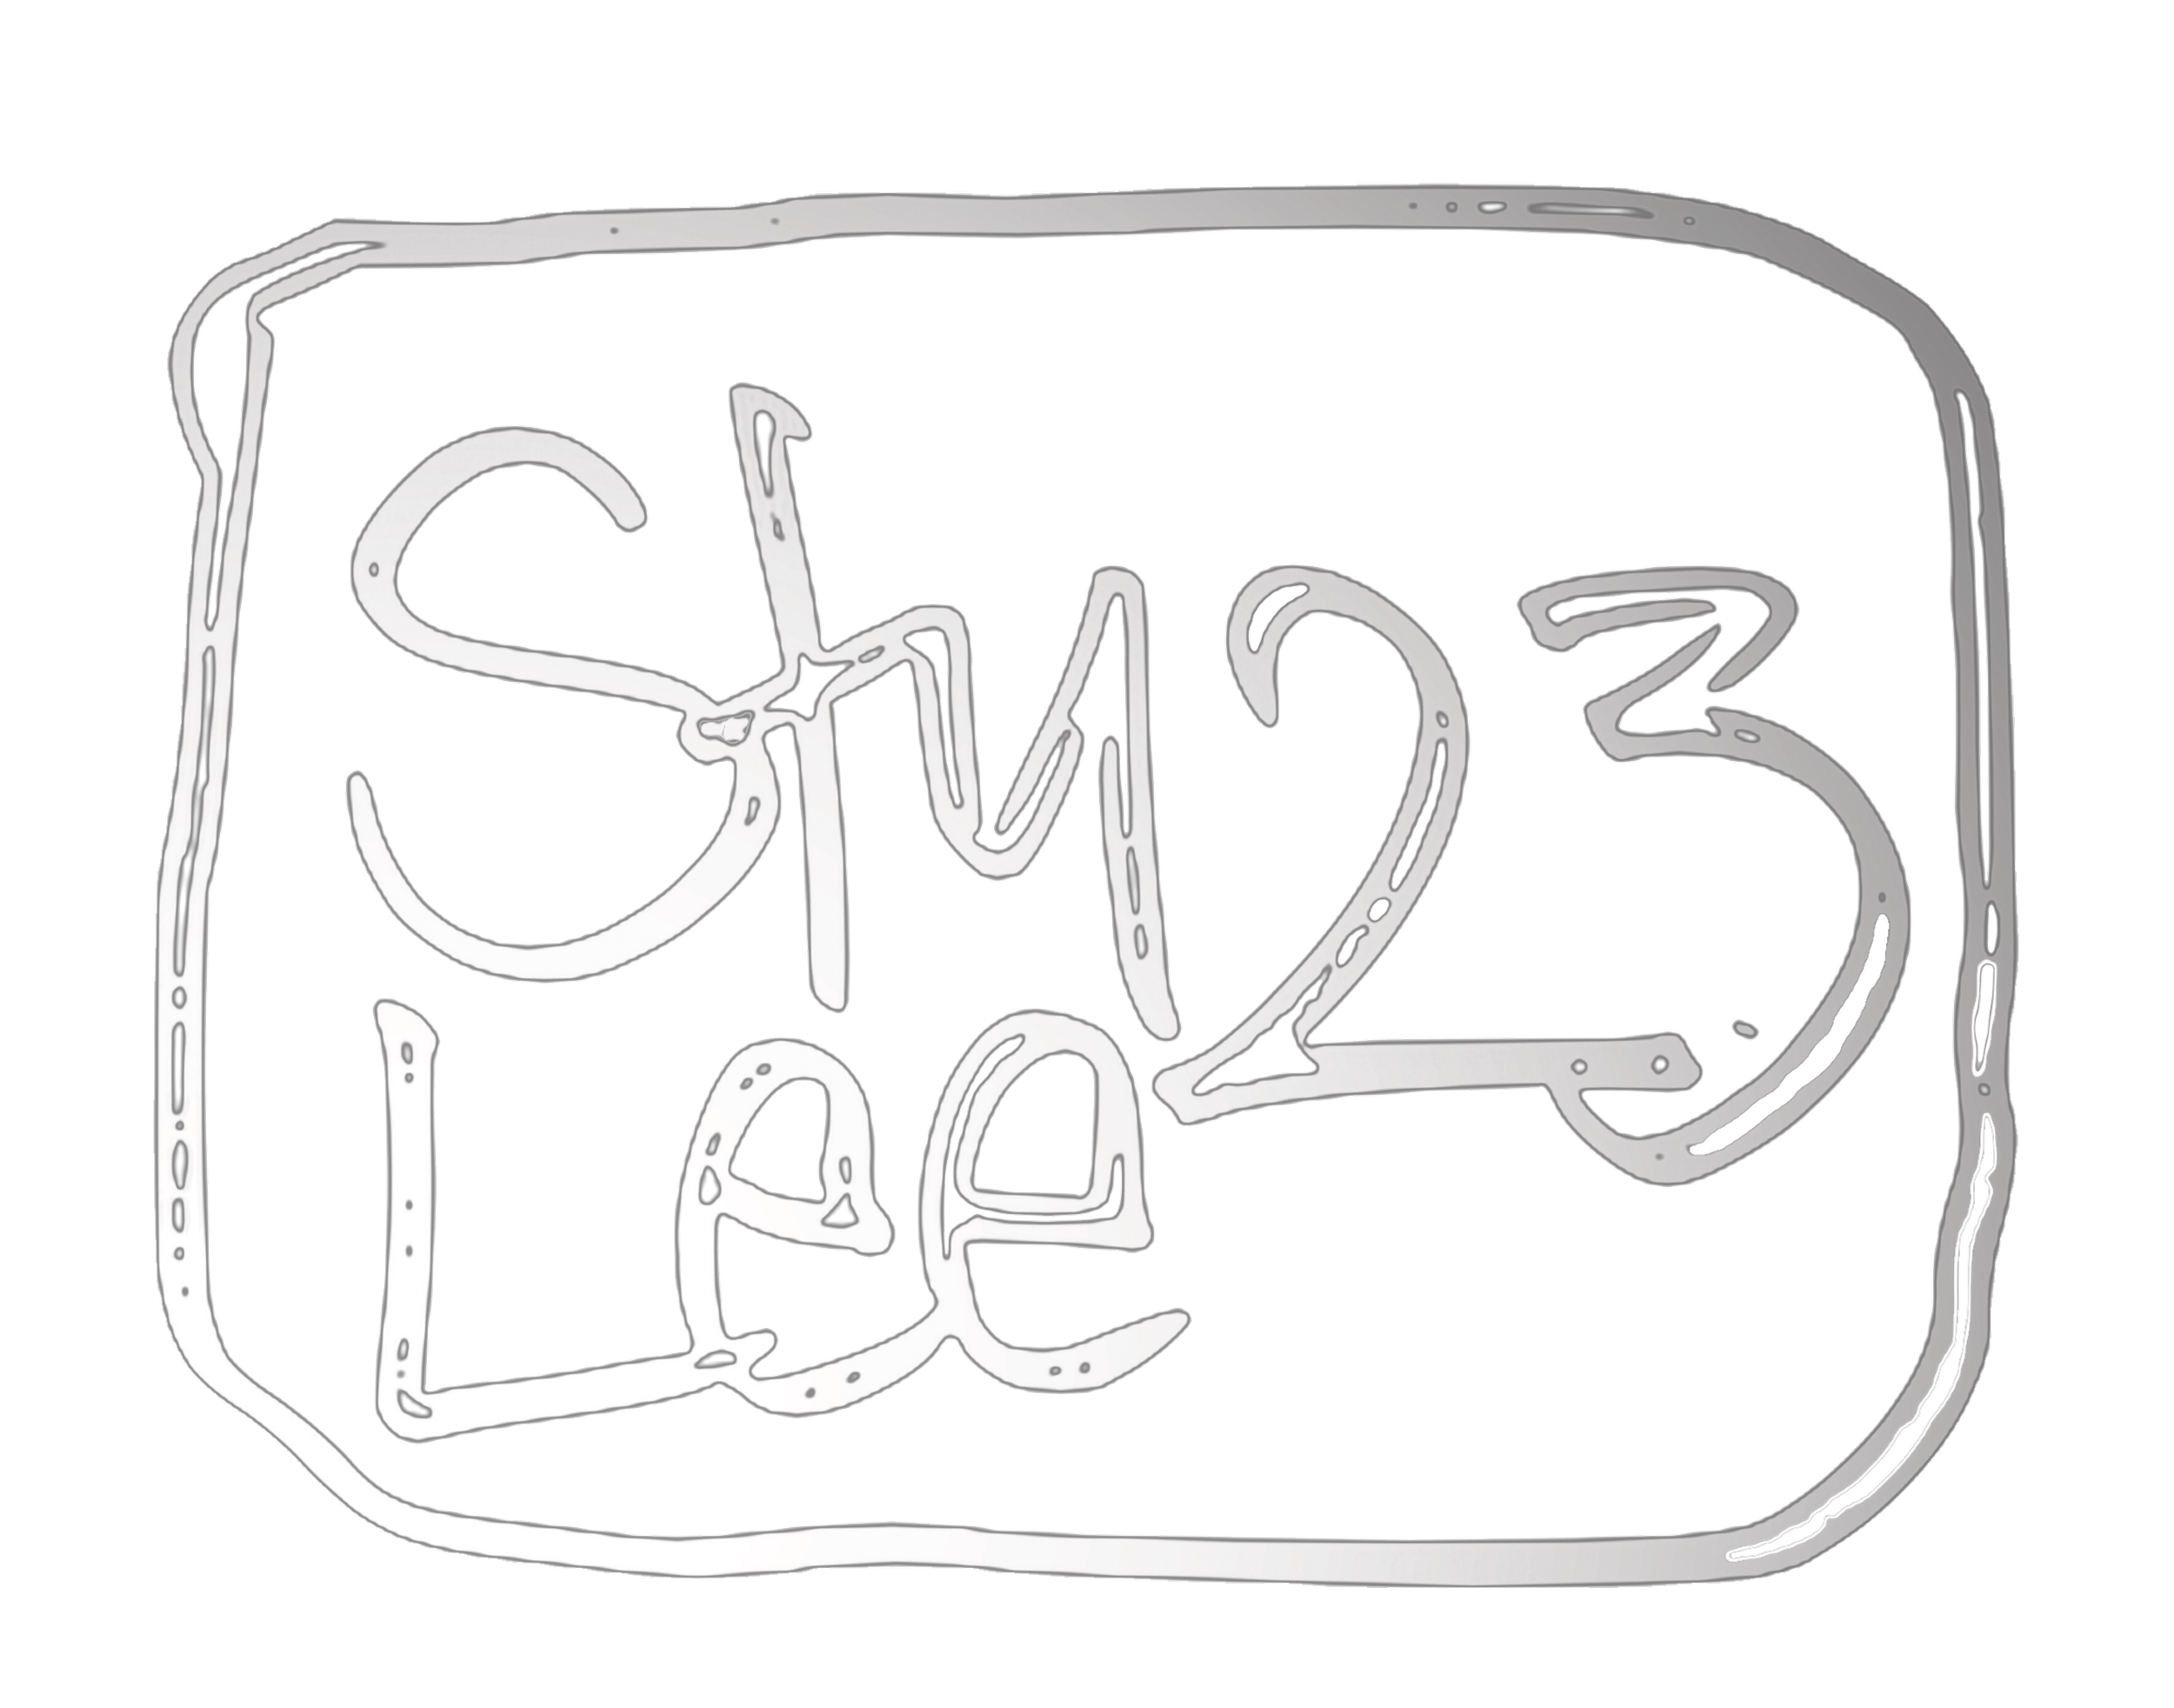 Stu Lee Art